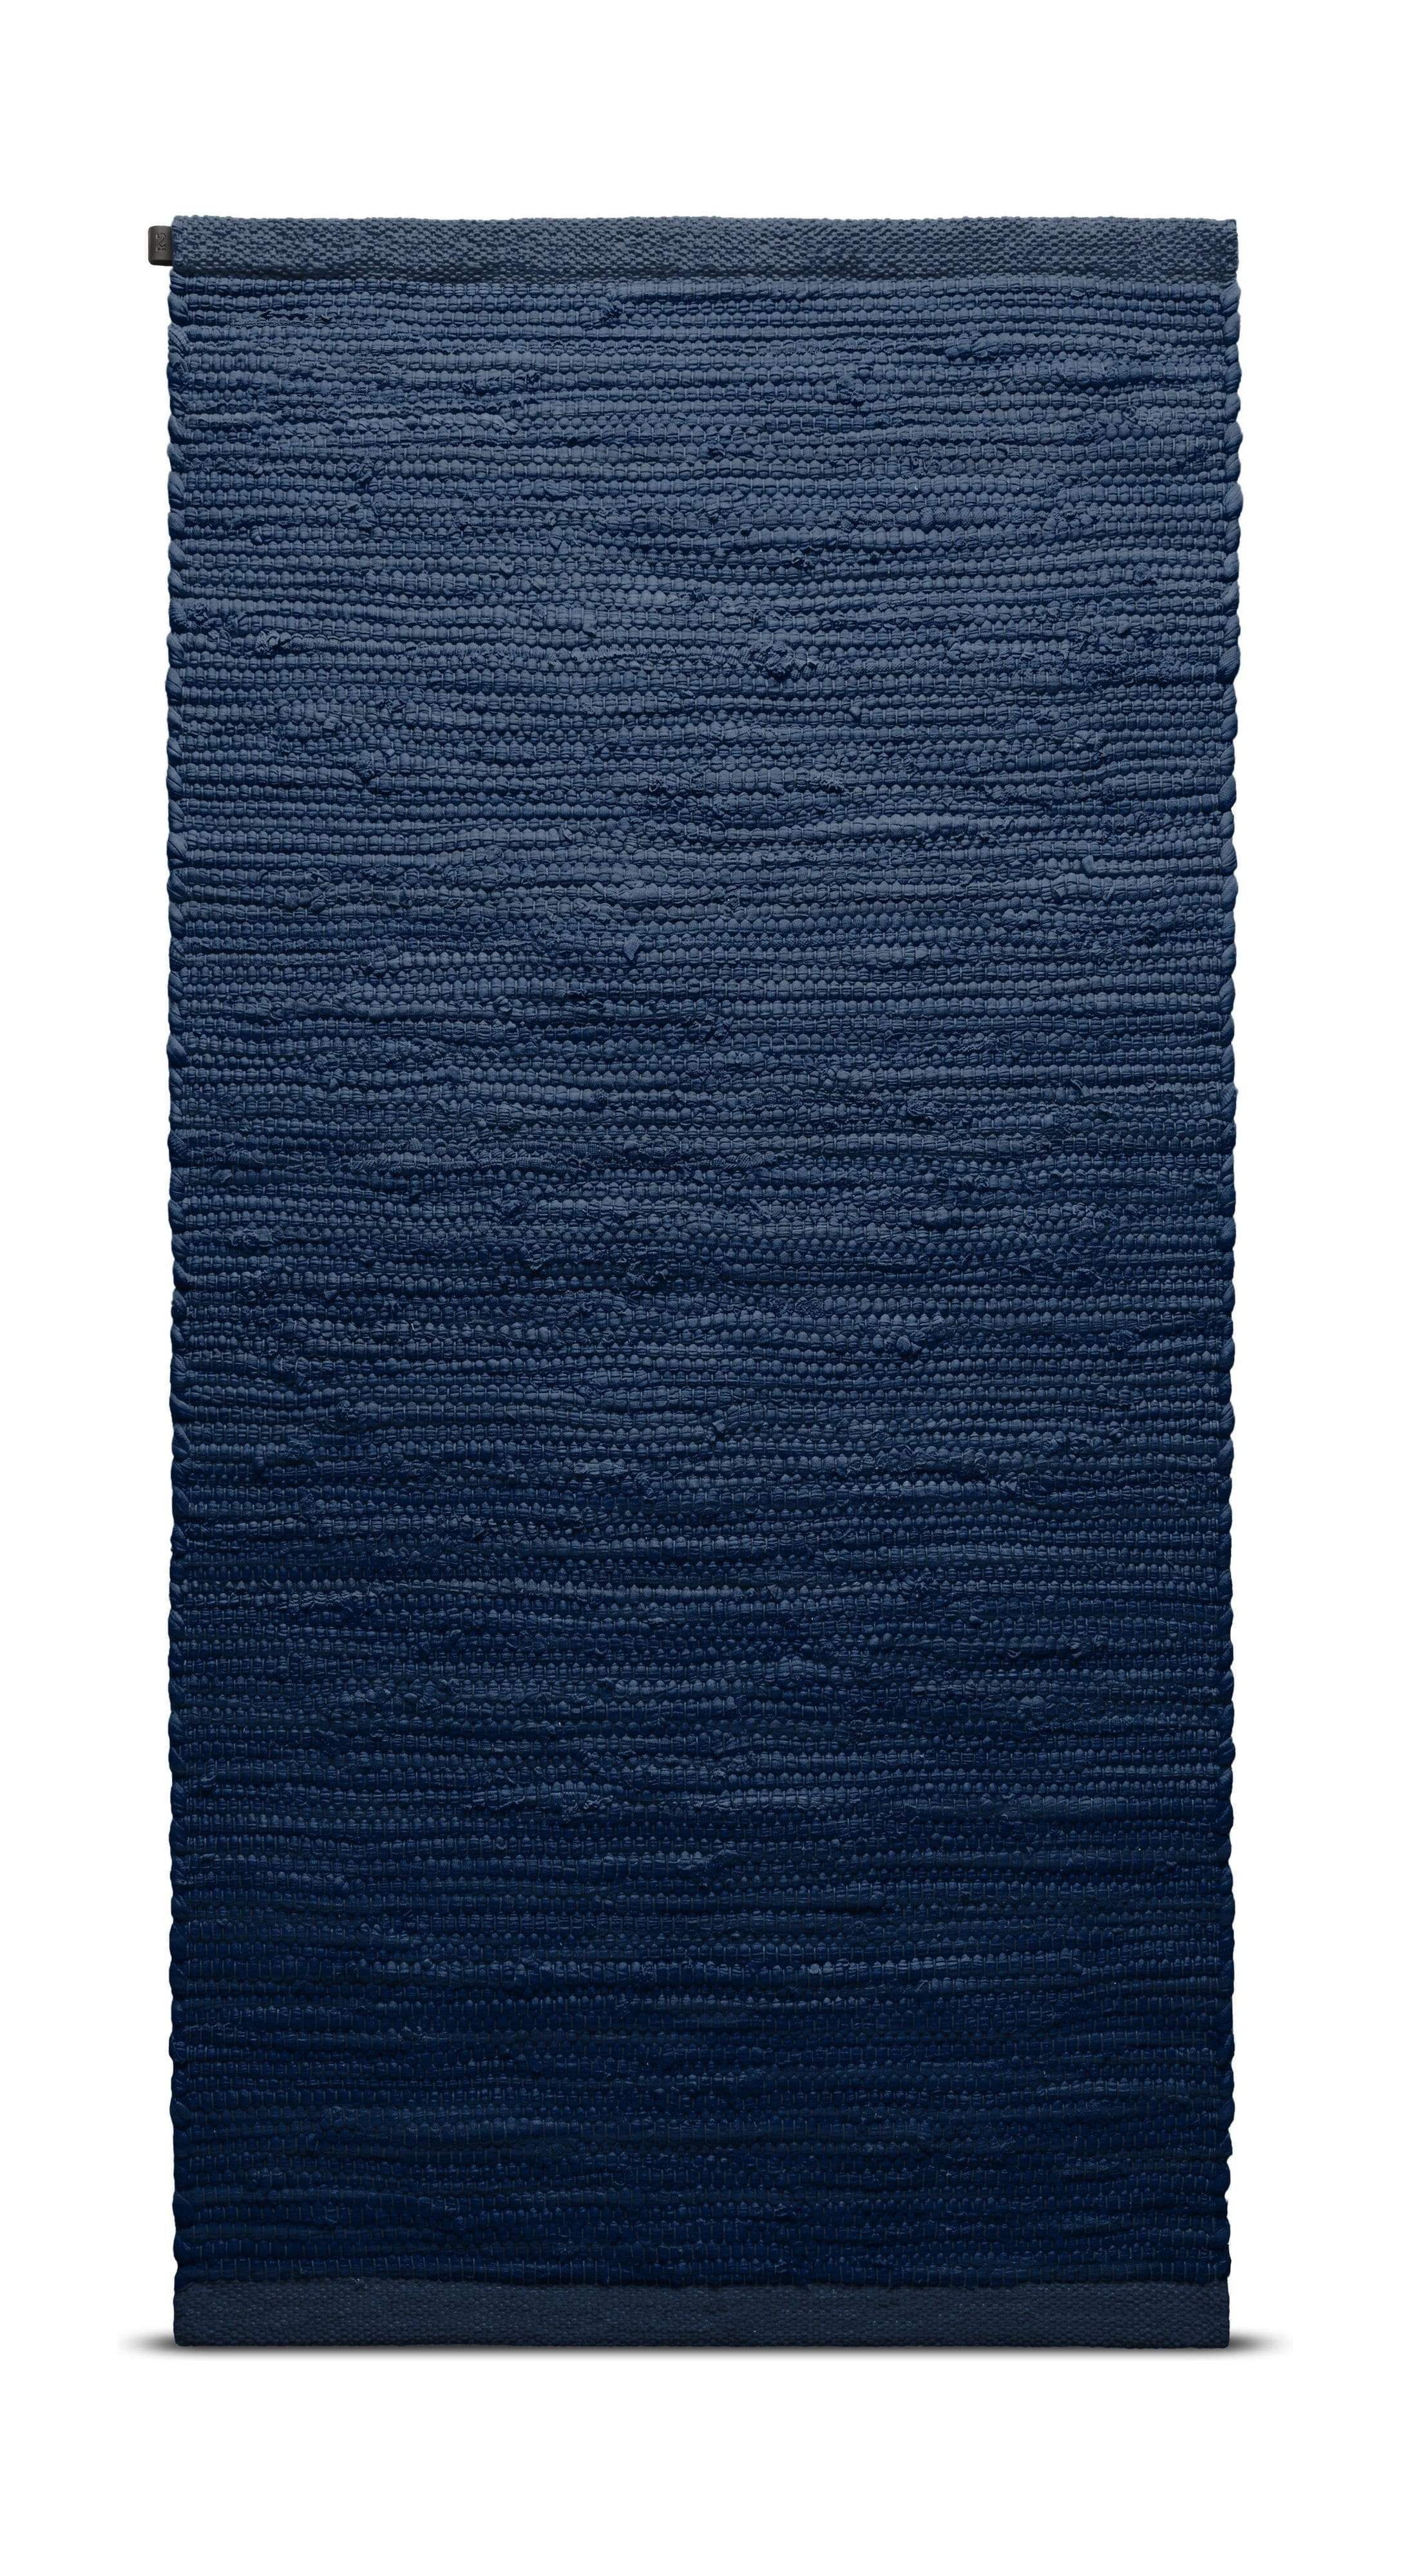 地毯实心地毯170 x 240厘米，蓝莓